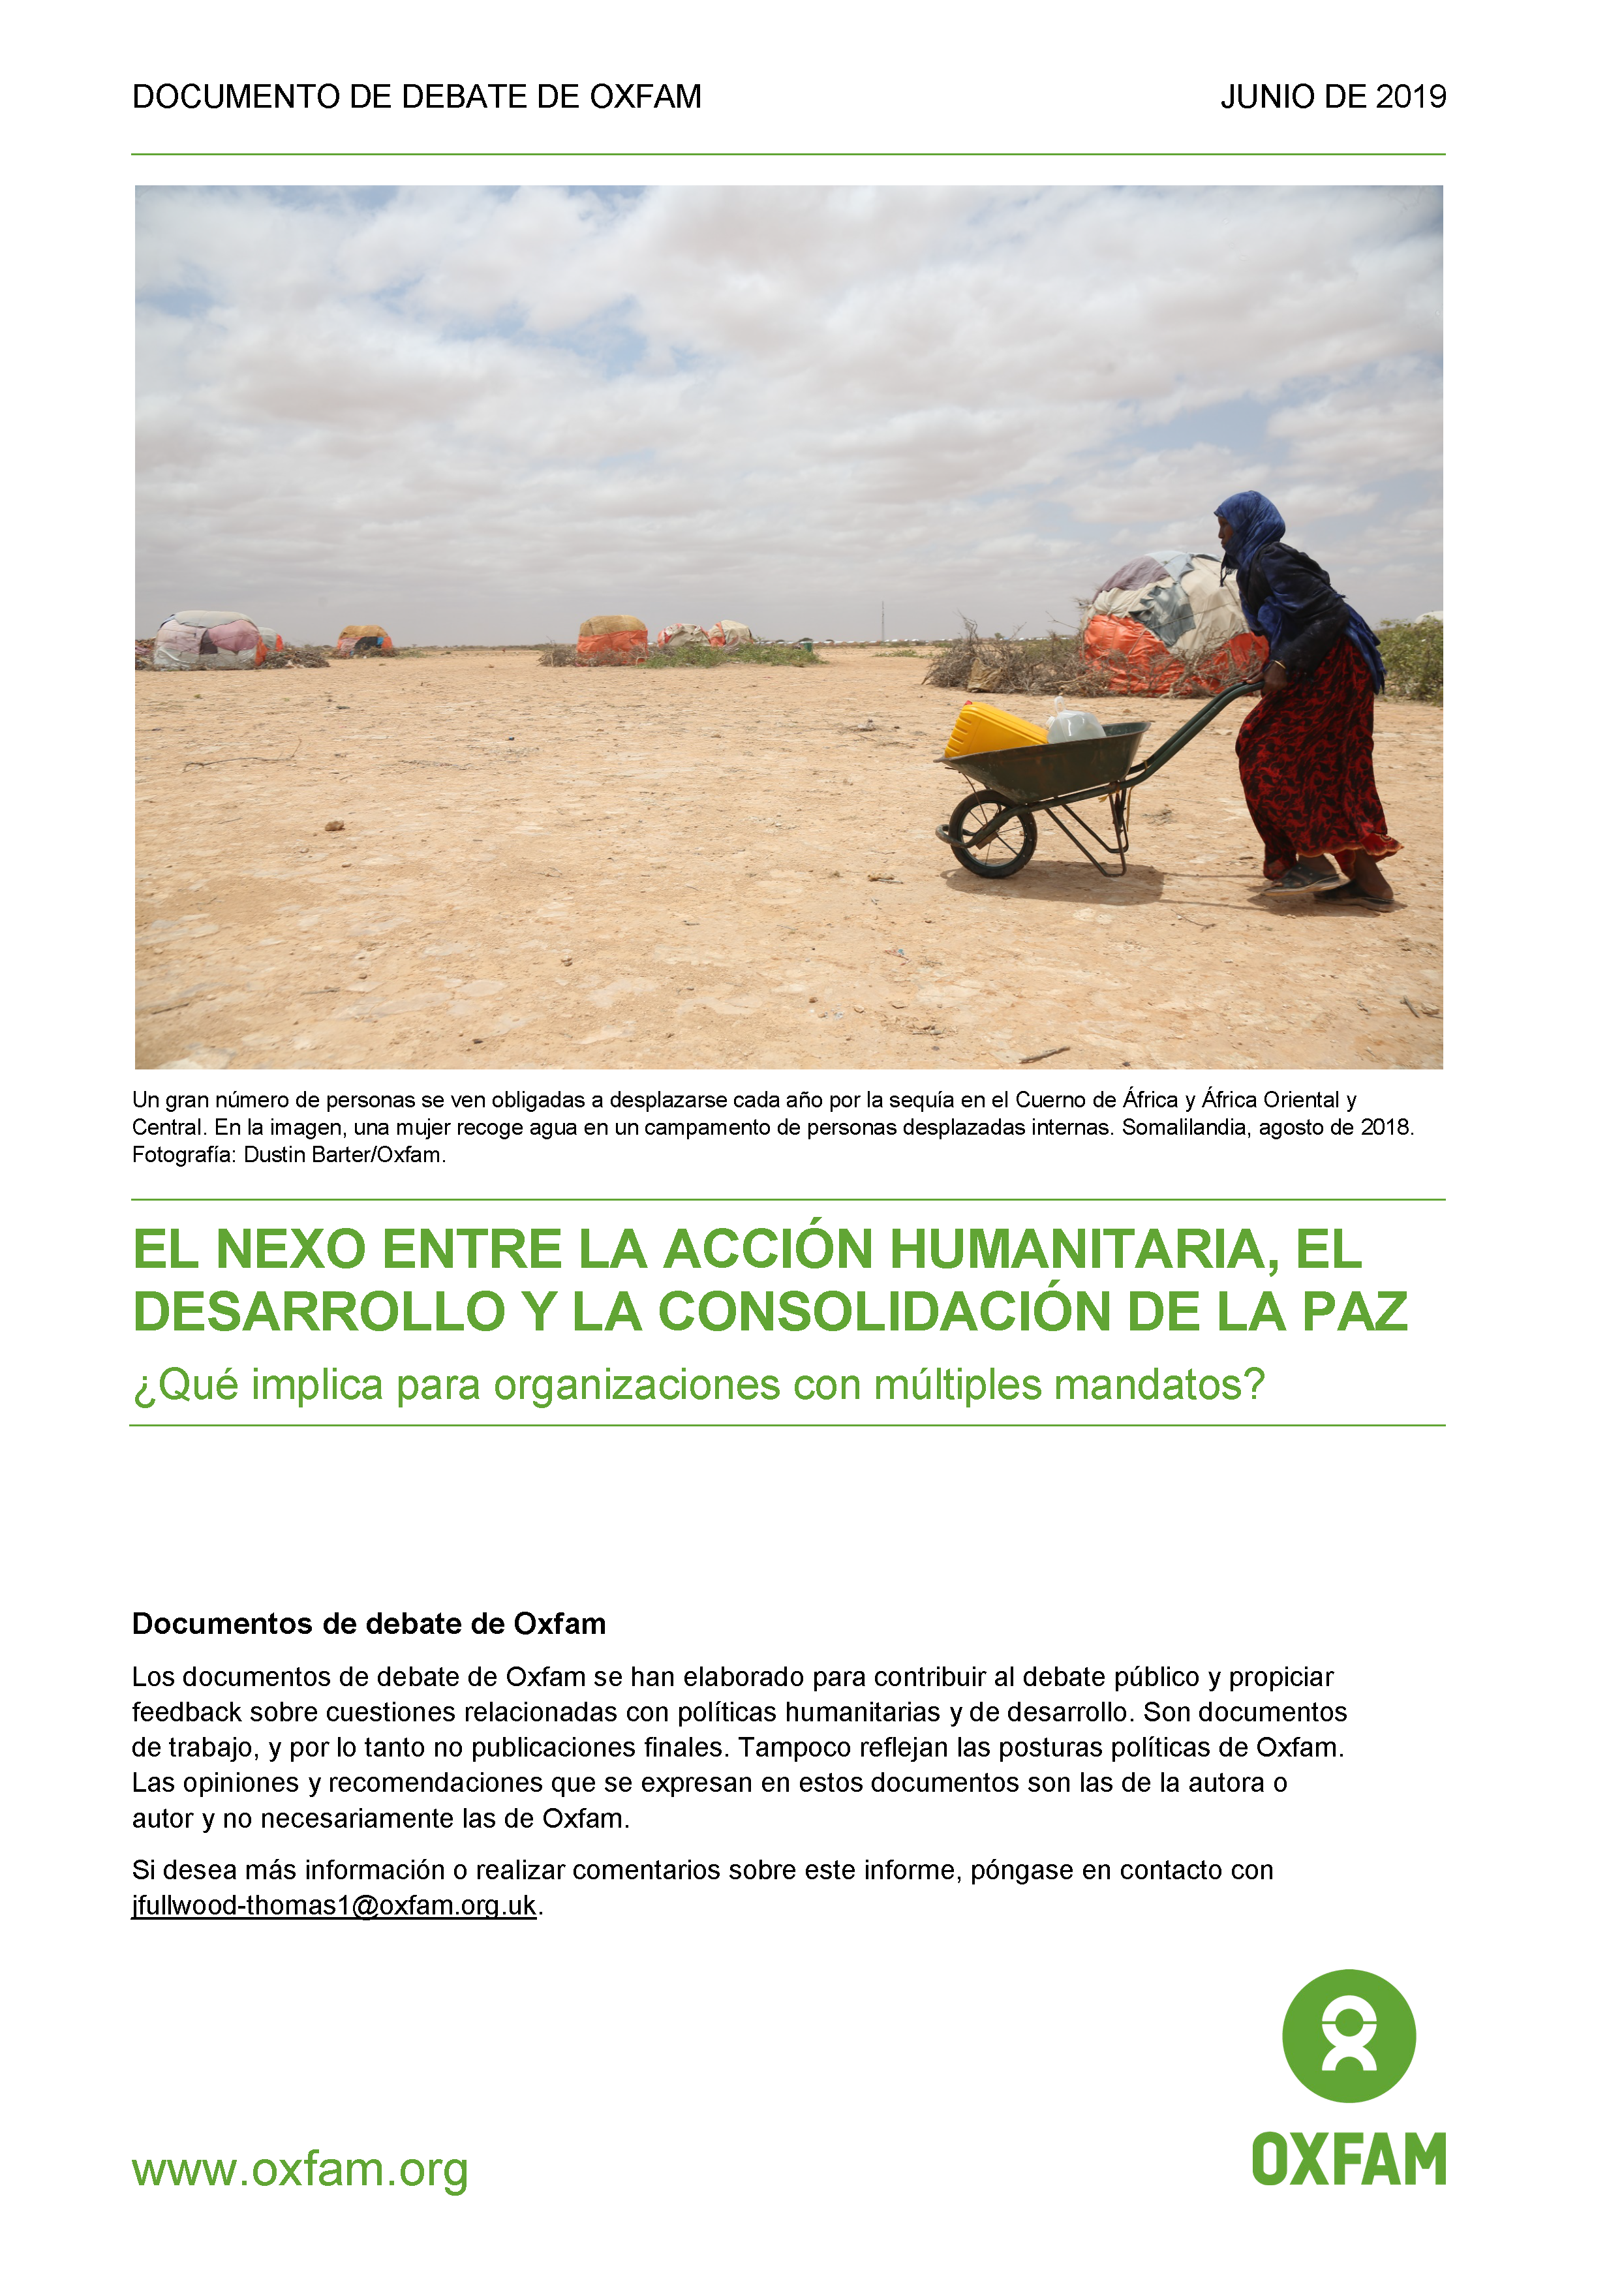 Cover page for El Nexo Entre La Acción Humanitaria, El Desarrollo Y La Consolidación De La Paz: ¿Qué implica para organizaciones con múltiples mandatos?